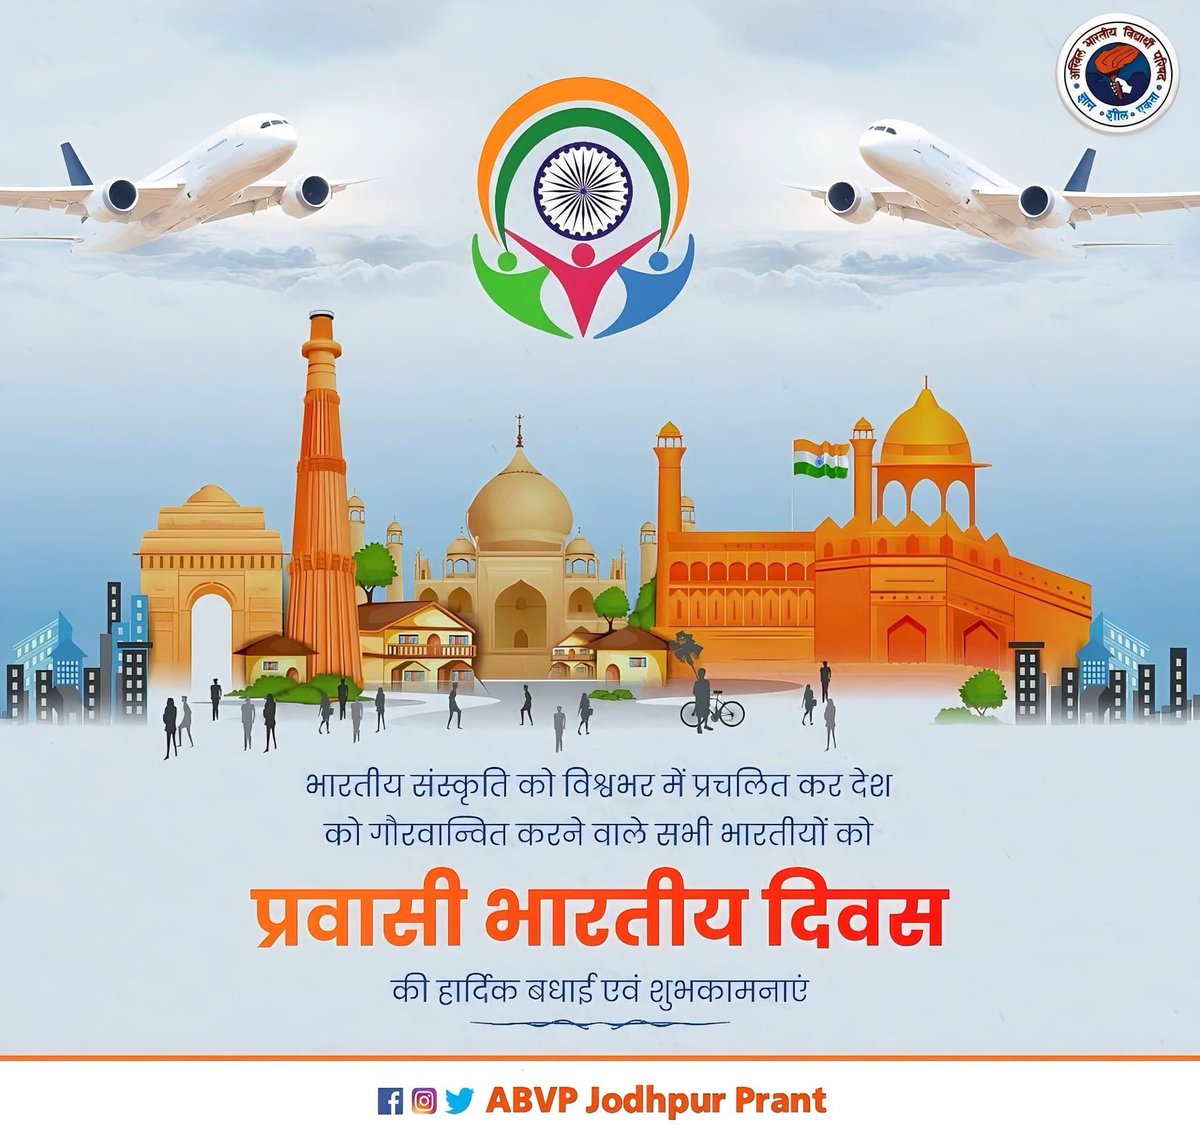 उन भारतीयों का सम्मान करते हुए जो विदेशी भूमि पर होते हुए भी अपने राष्ट्र के लिए योगदान देते हैं।
@ABVPRaj 
@ABVPJodhpur 
#PravasiBharatiyaDiwas